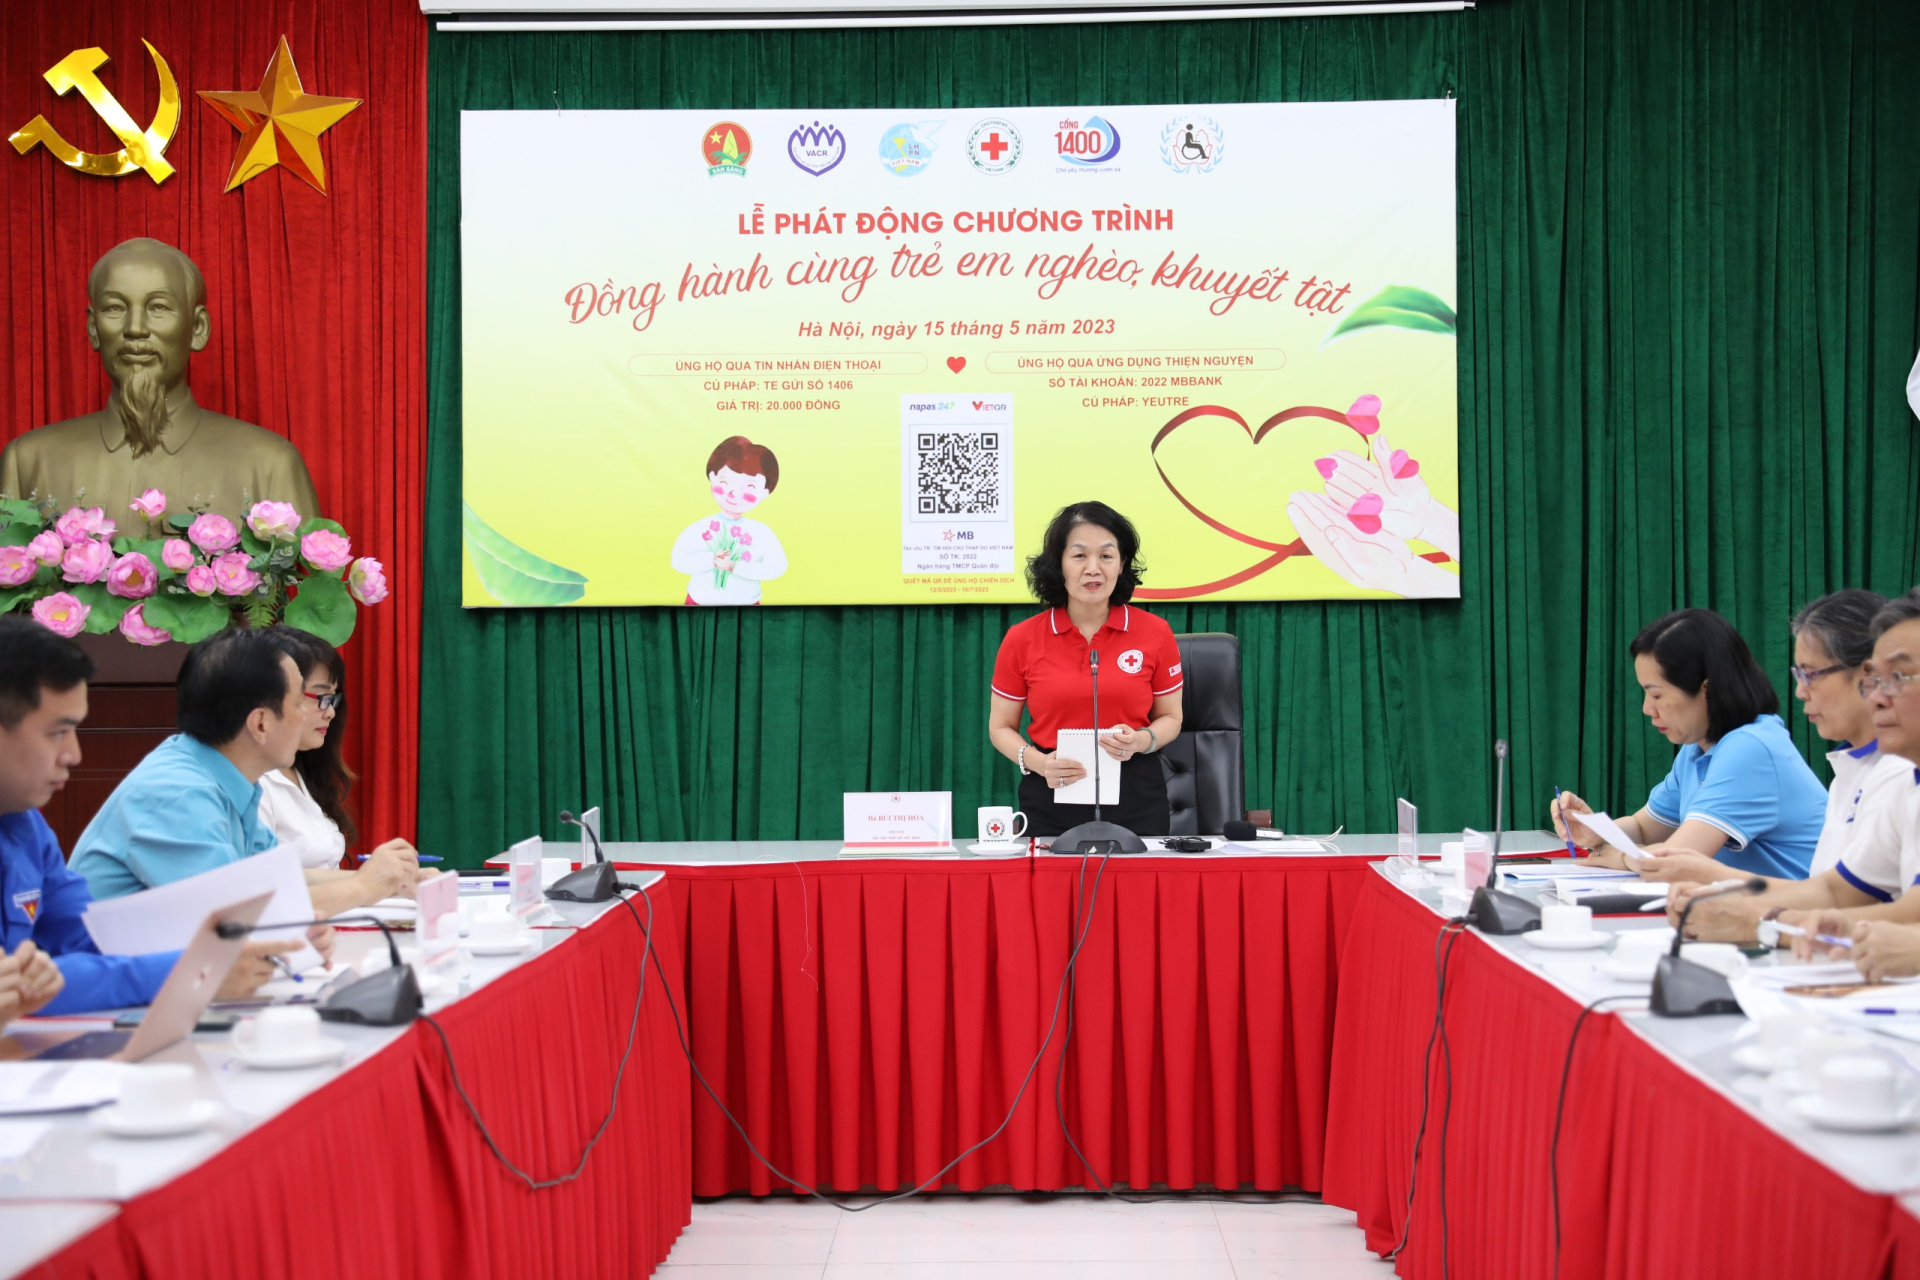 Bà Bùi Thị Hoà, Chủ tịch Hội Chữ thập đỏ Việt Nam phát động chương trình "Đồng hành cùng trẻ em nghèo, khuyết tật".